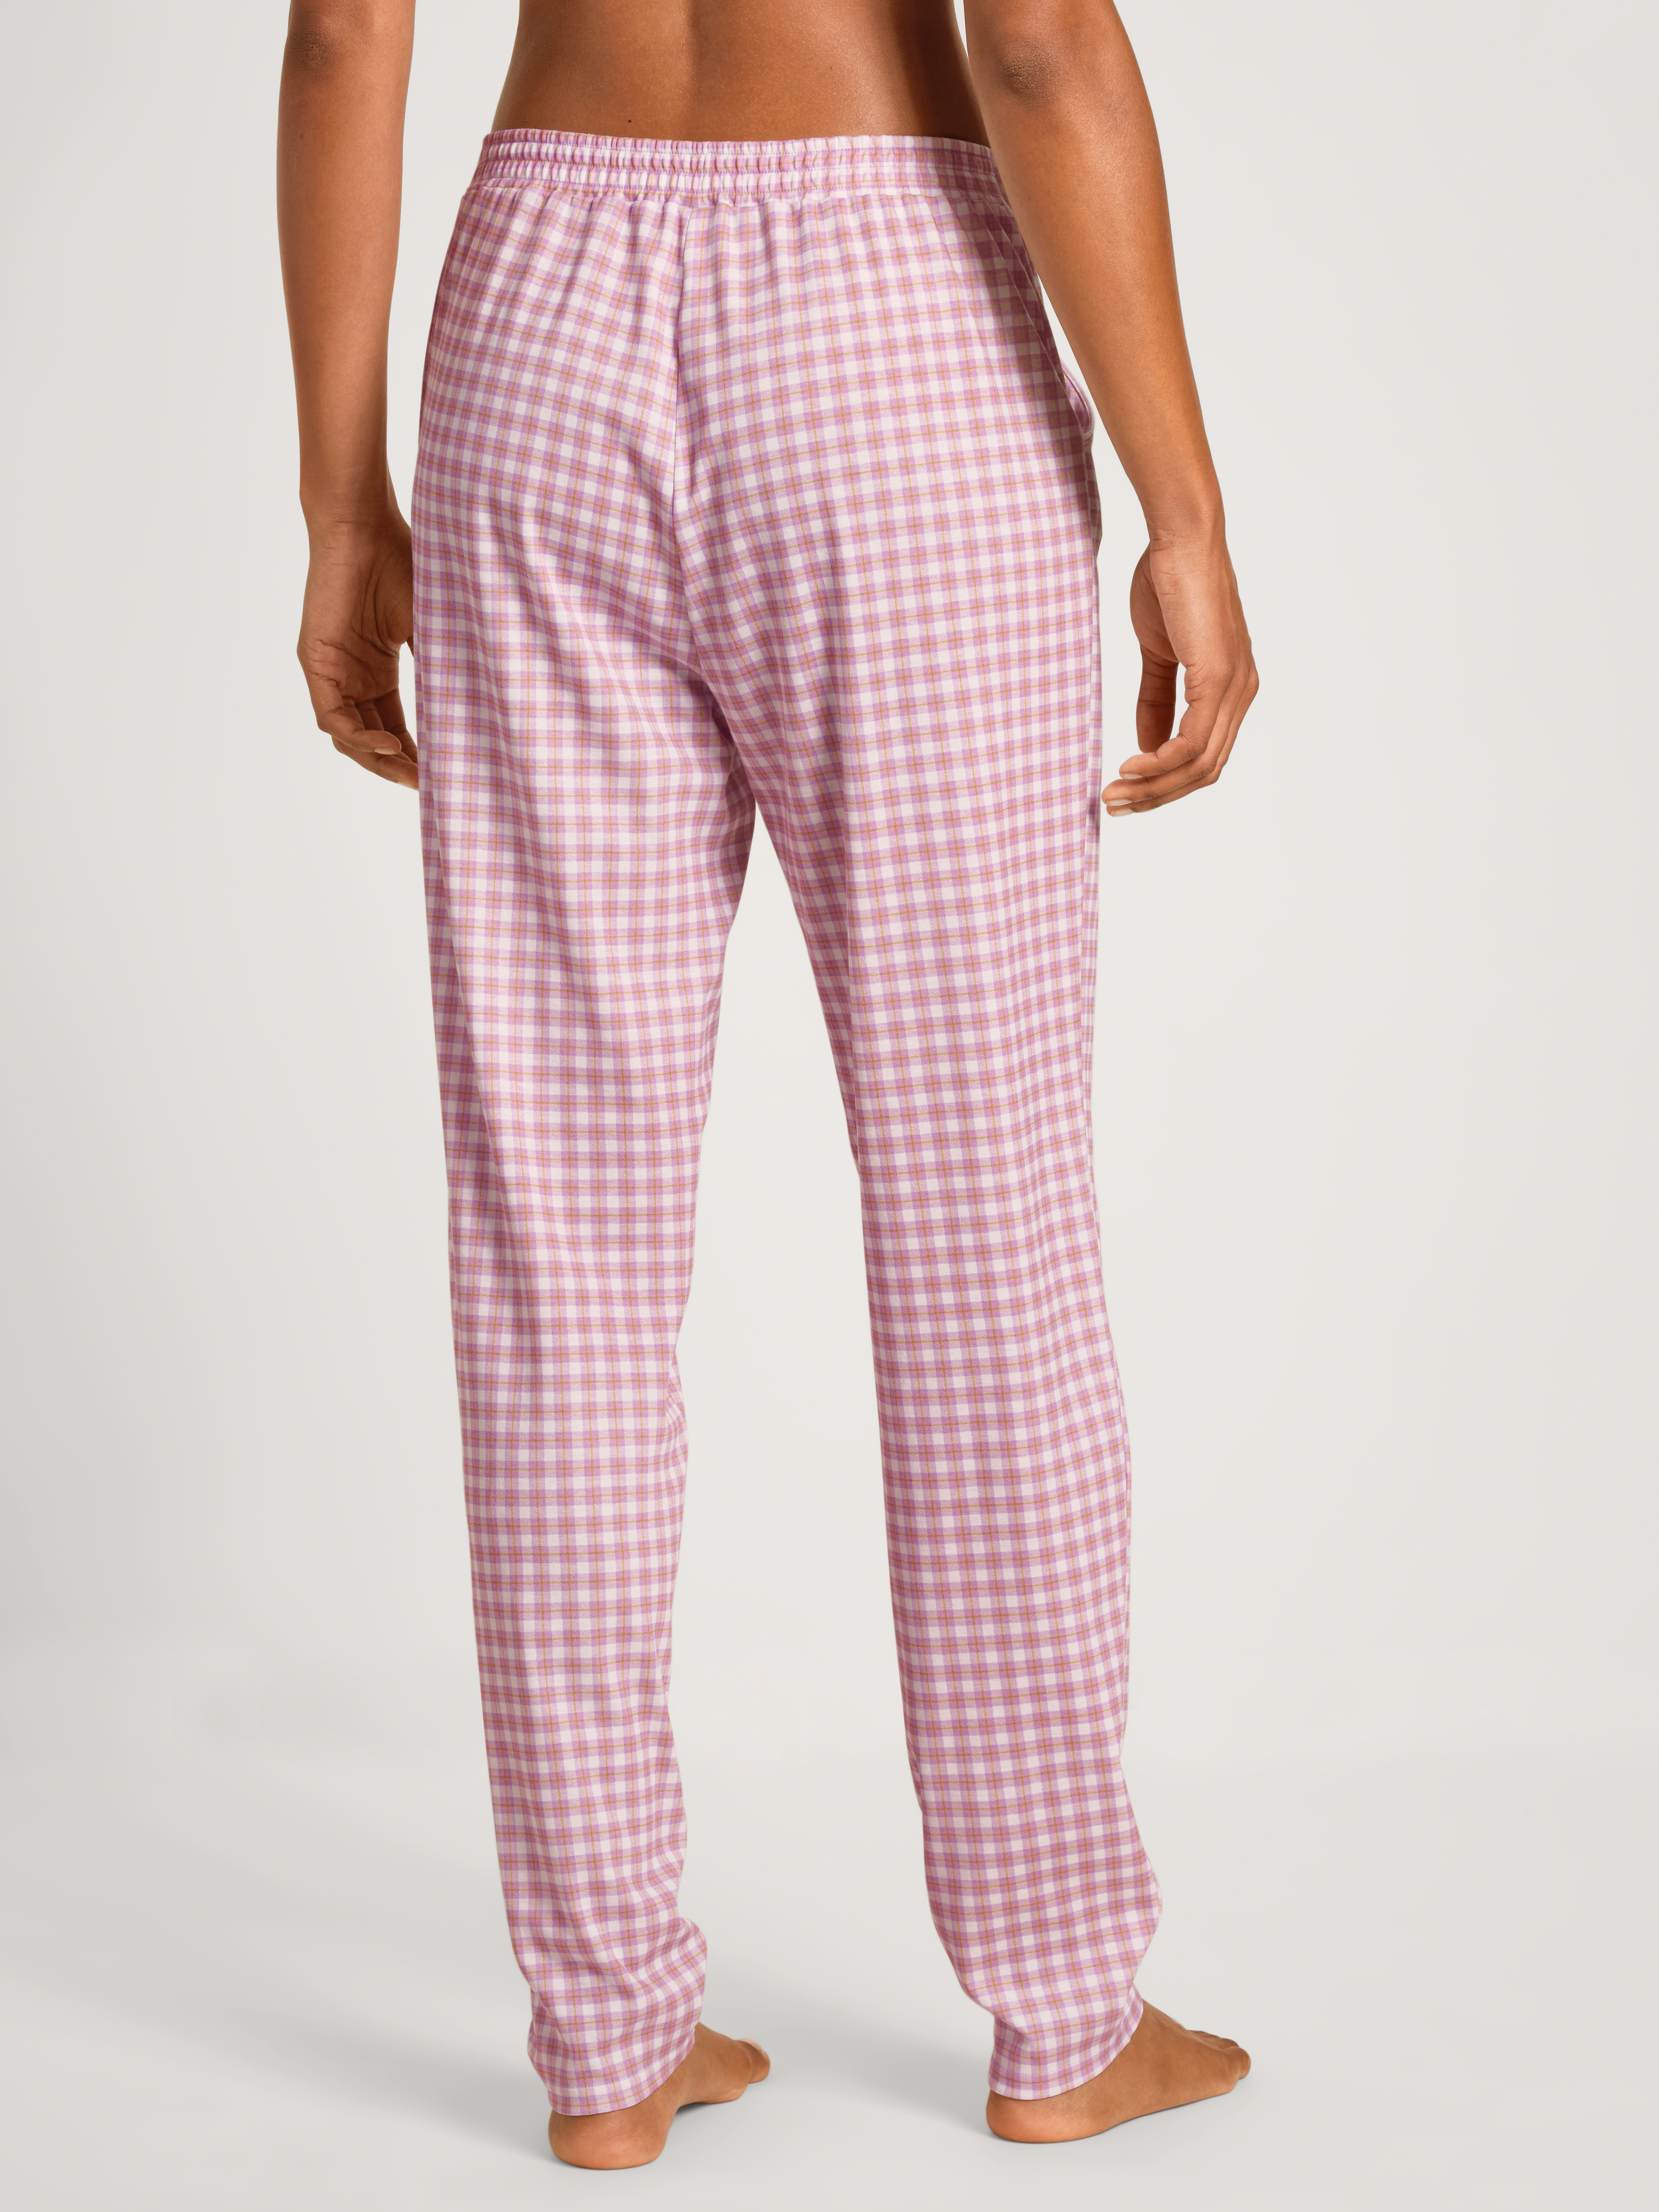 Sleepwear-Hose aus reiner Baumwolle mit Karo-Print